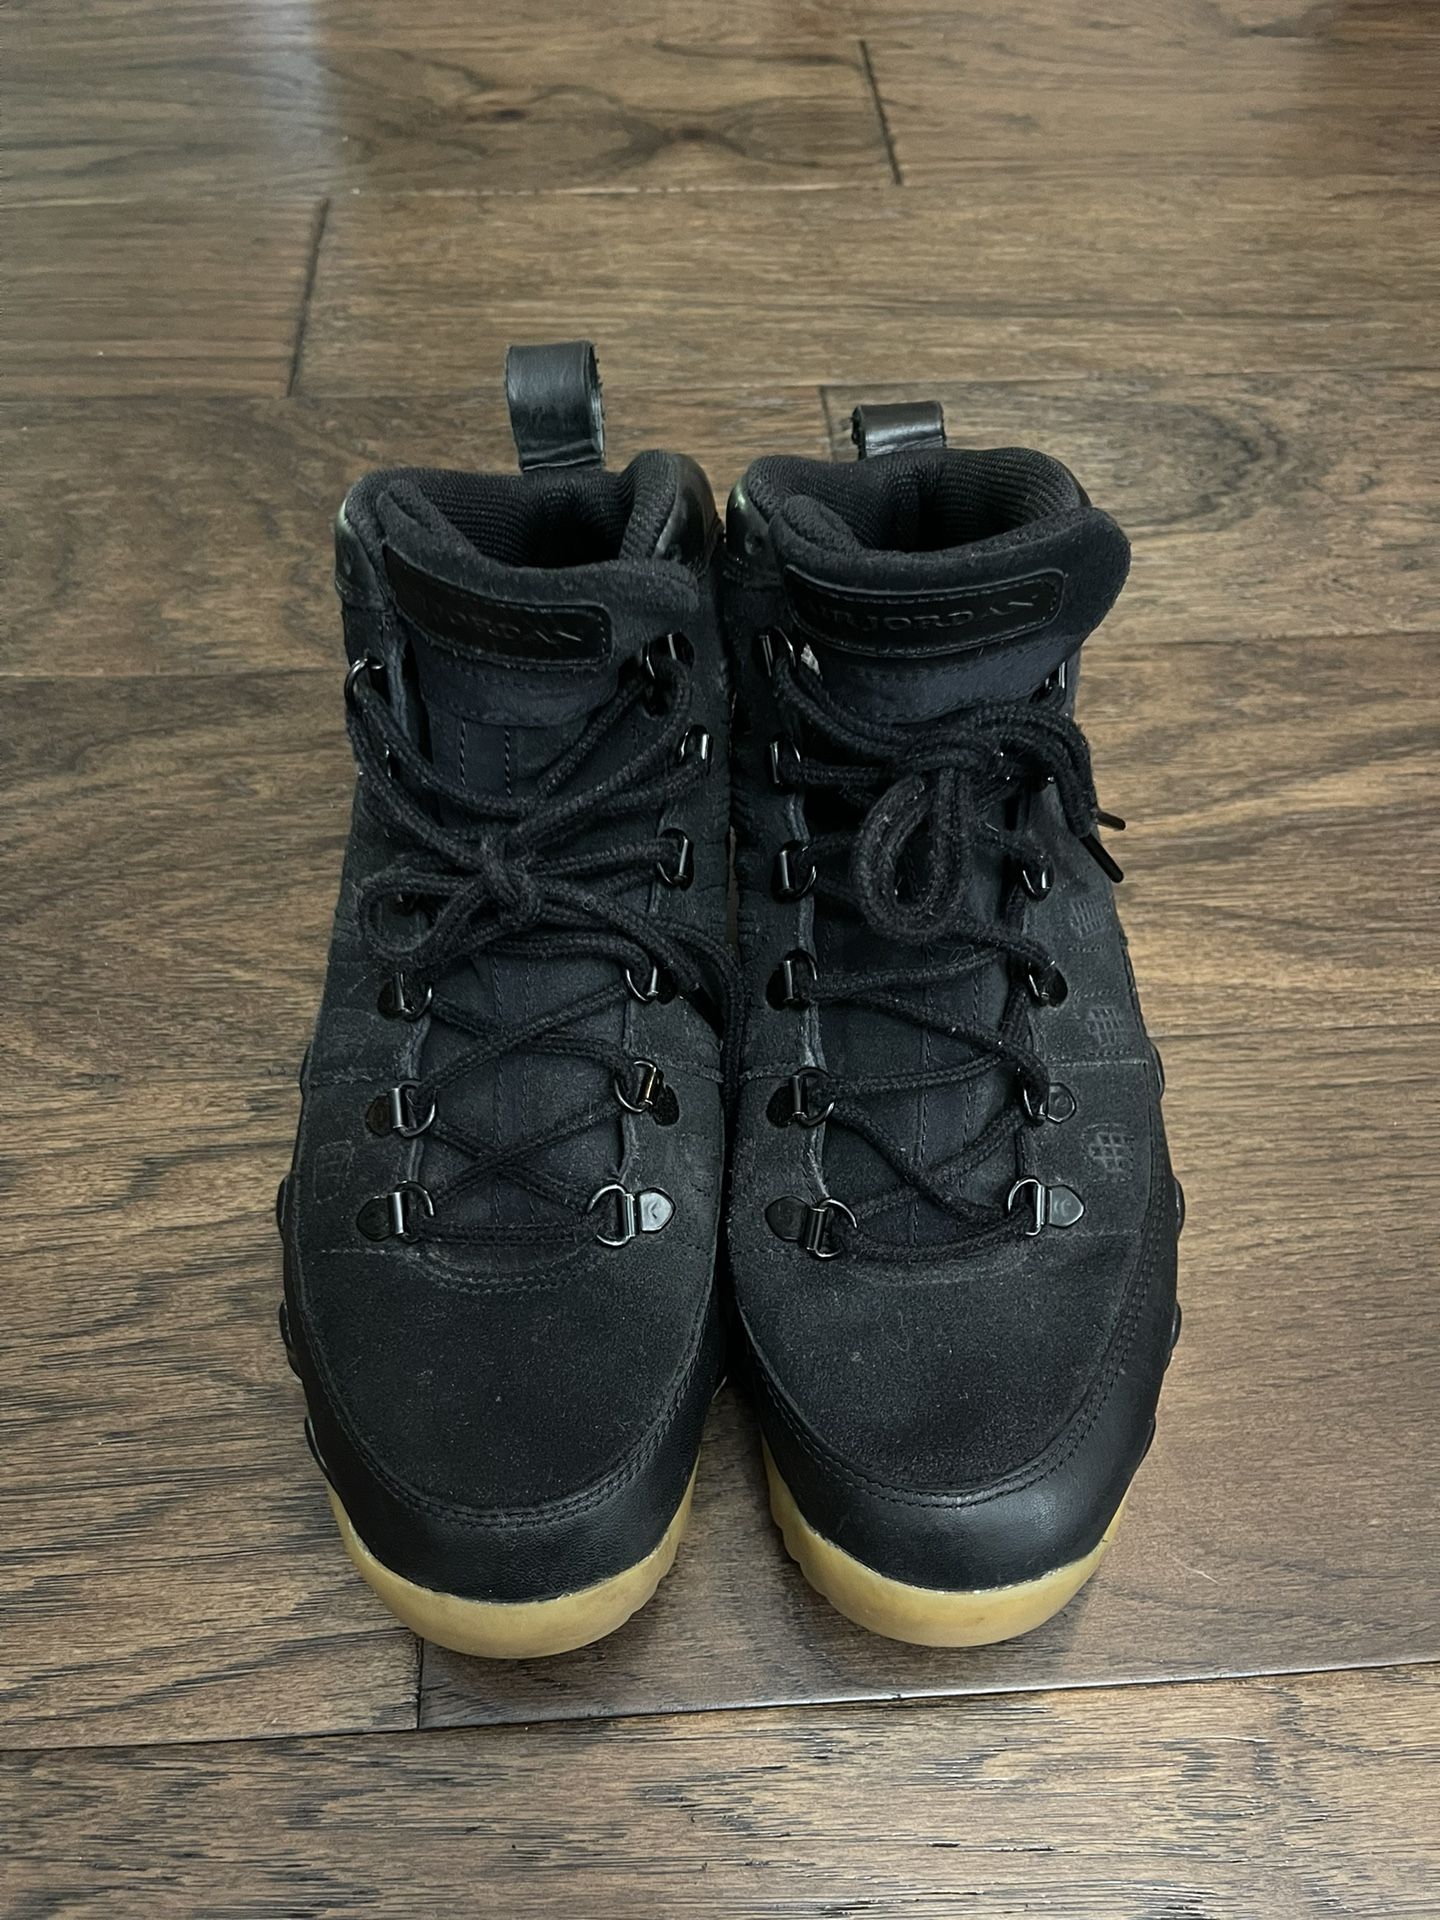 Jordan 9 Retro Boot “NRG” Size 8 Mens 